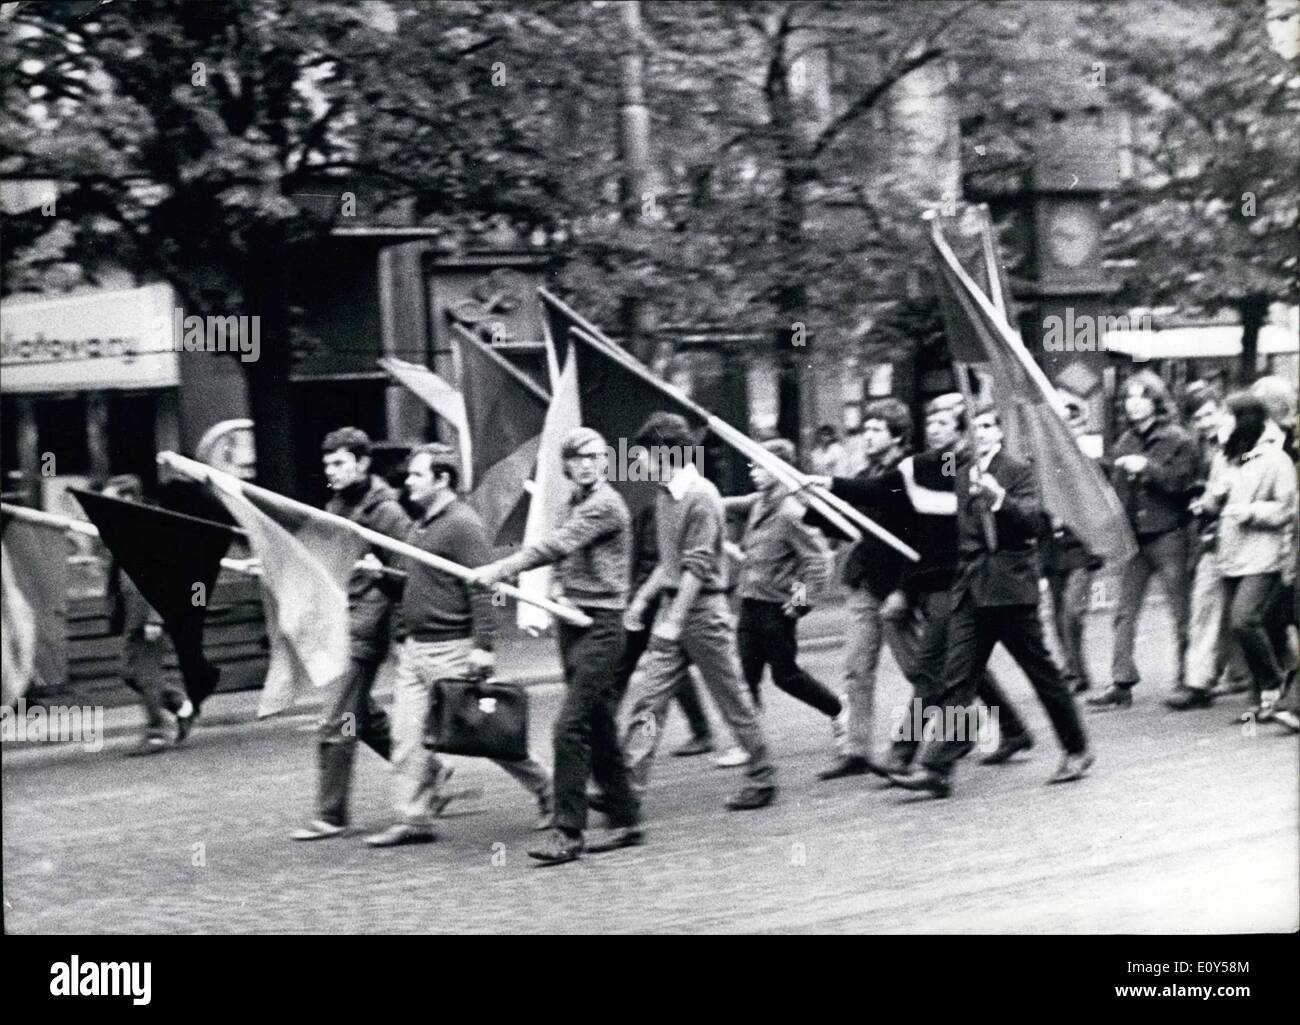 Agosto 08, 1968 - CSSR occupata da truppe orientale.: durante la notte del xx ad agosto 1968, le truppe del Patto di Varsavia membri Foto Stock